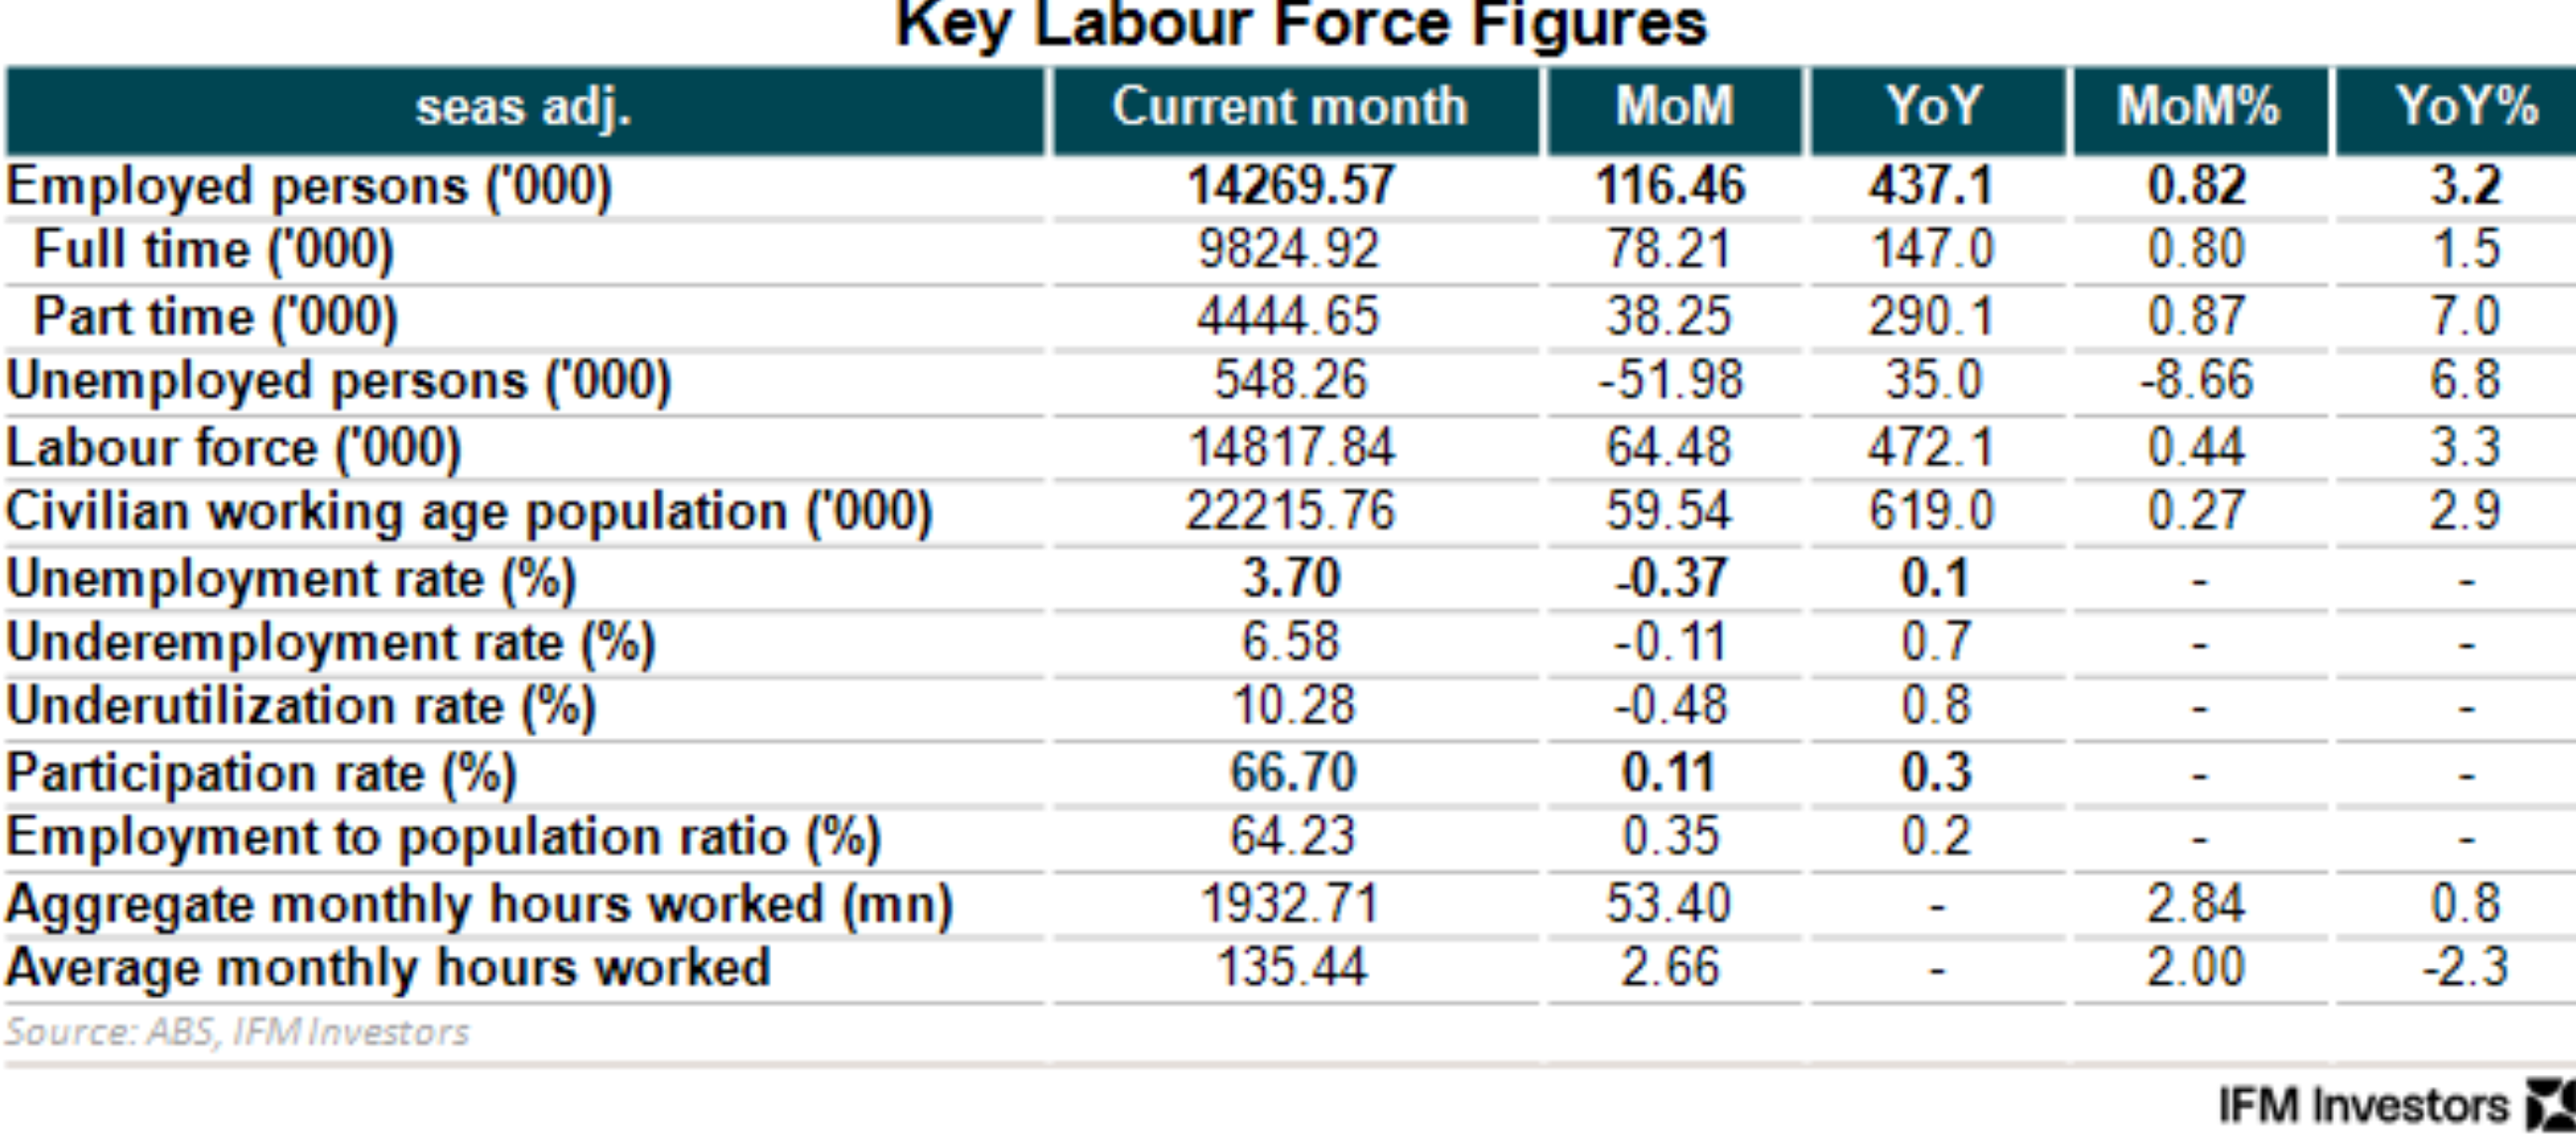 Labour force key figures